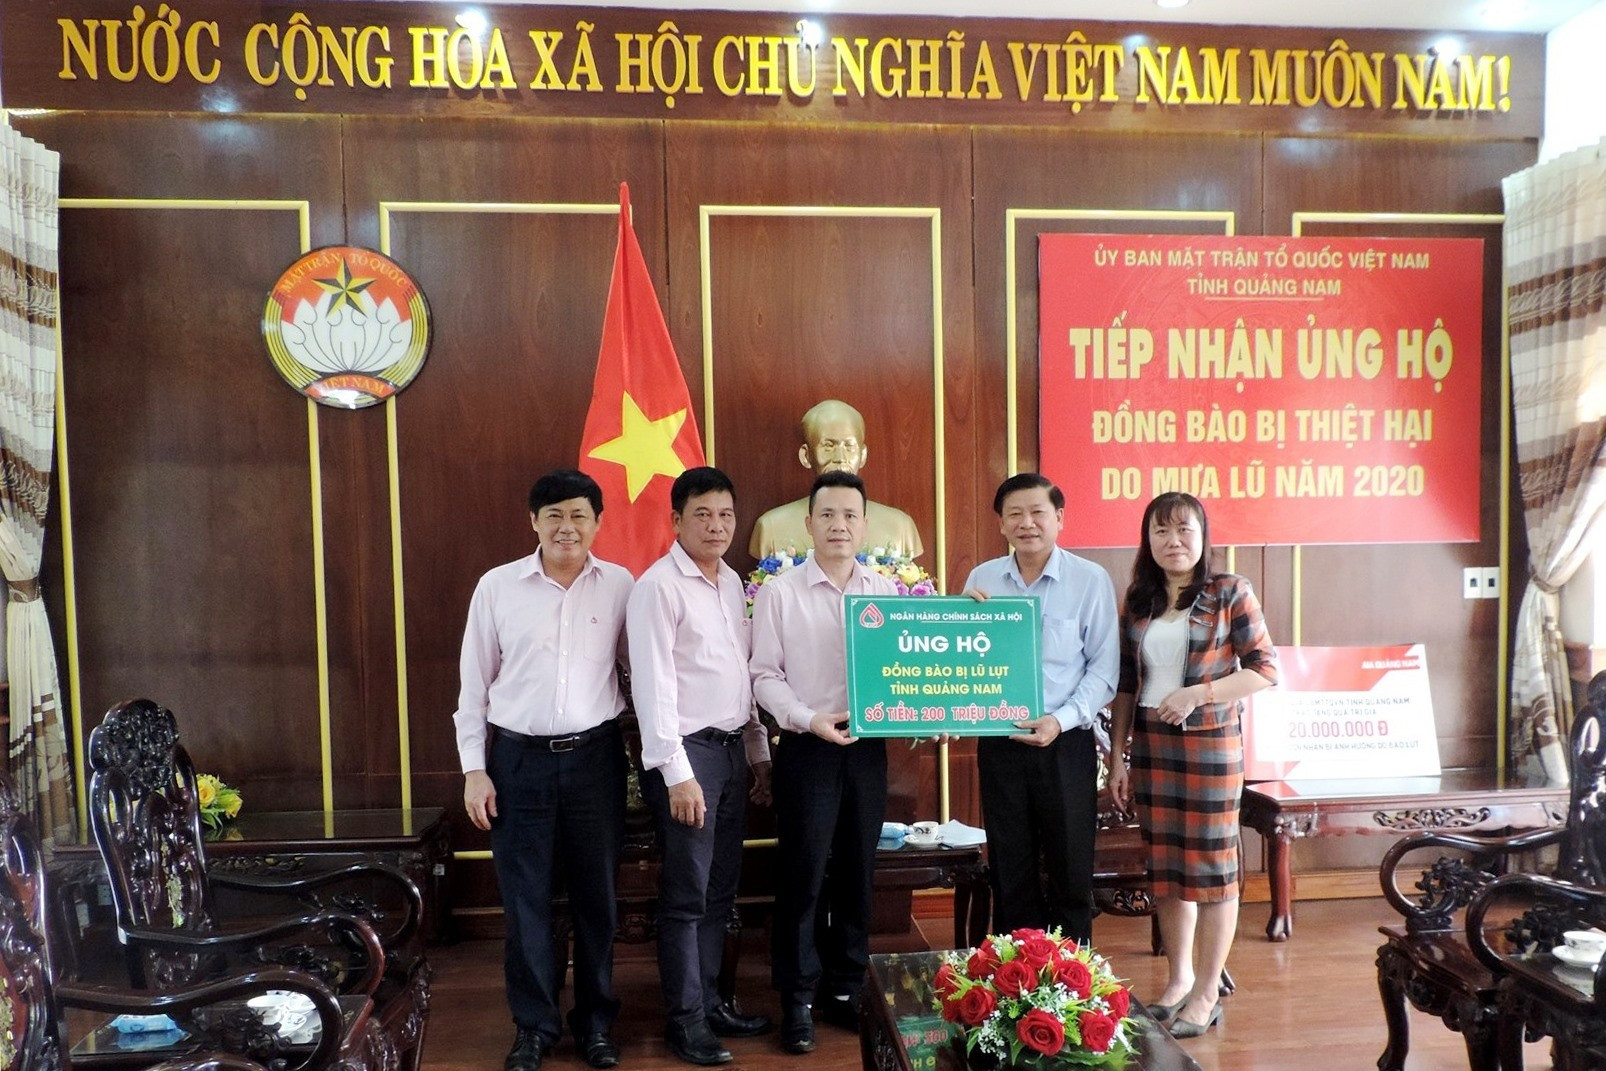 và 200 triệu đồng ủng hộ người dân vùng lũ được Phó tổng Giám đốc Ngân hàng CSXH Việt Nam Hoàng Minh Tế trao đến Ủy ban MTTQ Việt Nam tỉnh.